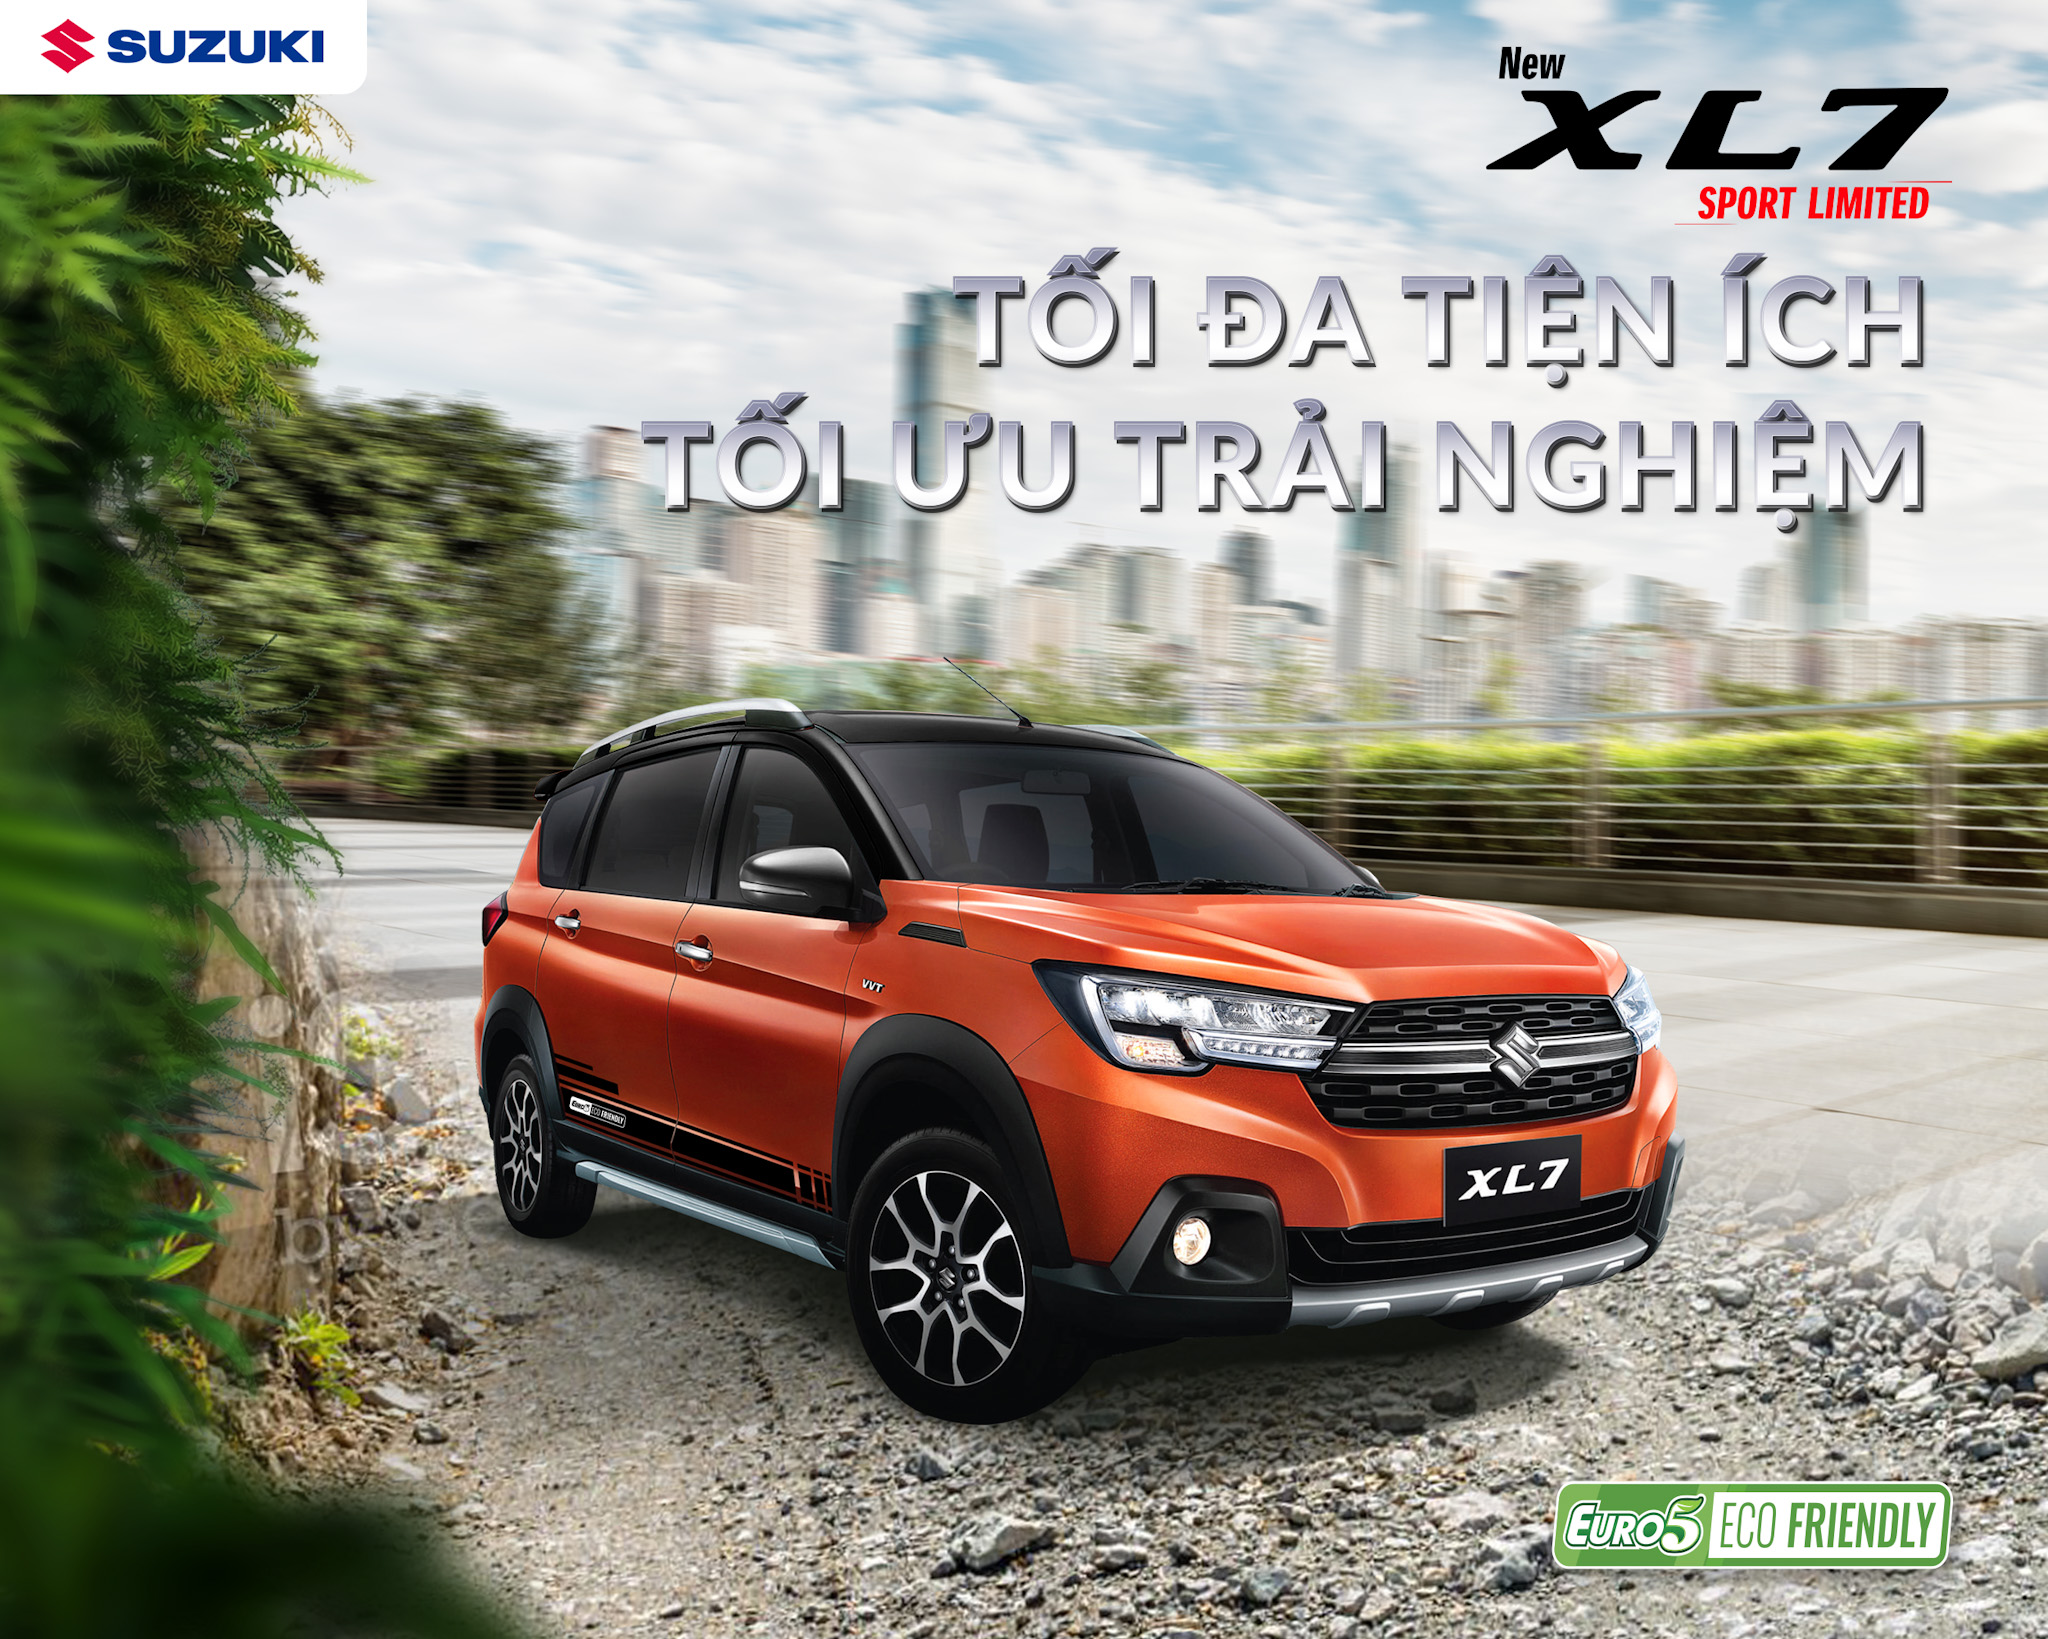 Suzuki XL7 Sport Limited ra mắt tại Việt Nam, giá từ 639,9 triệu